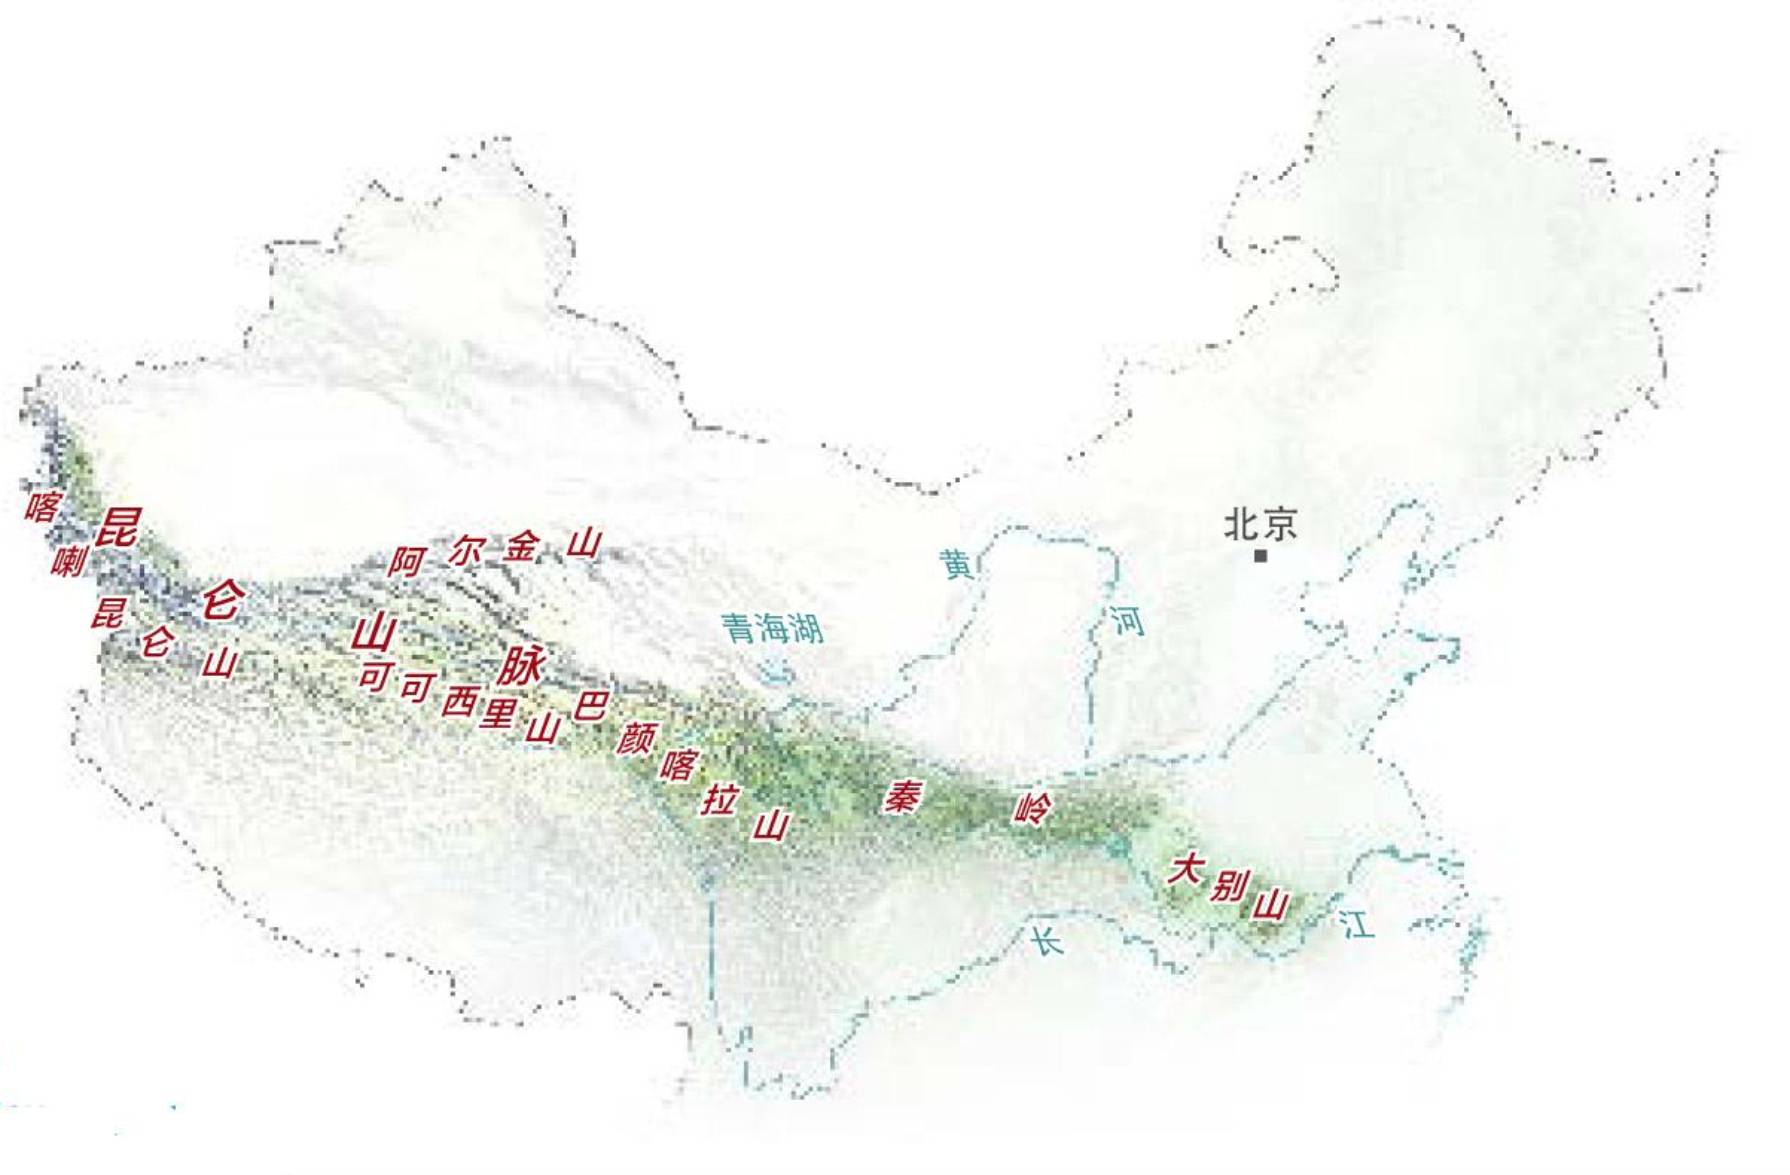 要了解昆仑山脉 需要从一张视角独特的中国地图开始 (图片源自中国图片